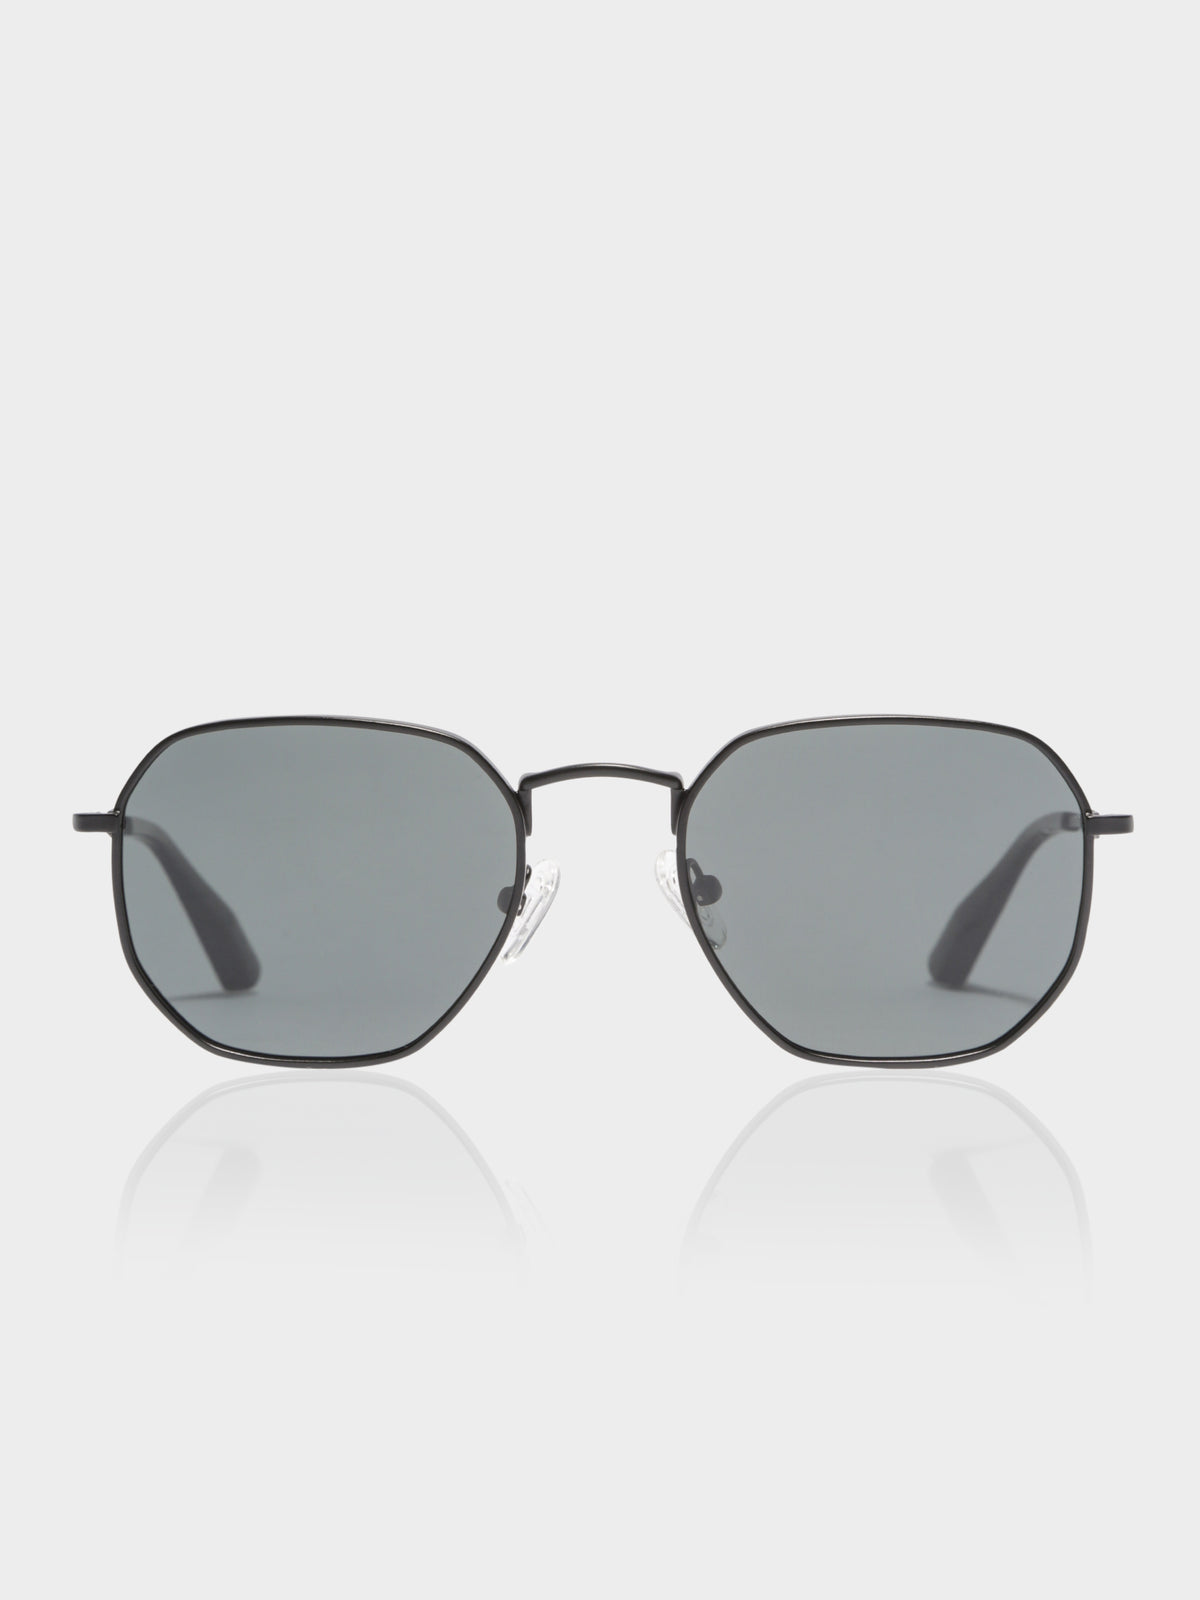 DXB Polarised Sunglasses in Black &amp; Grey